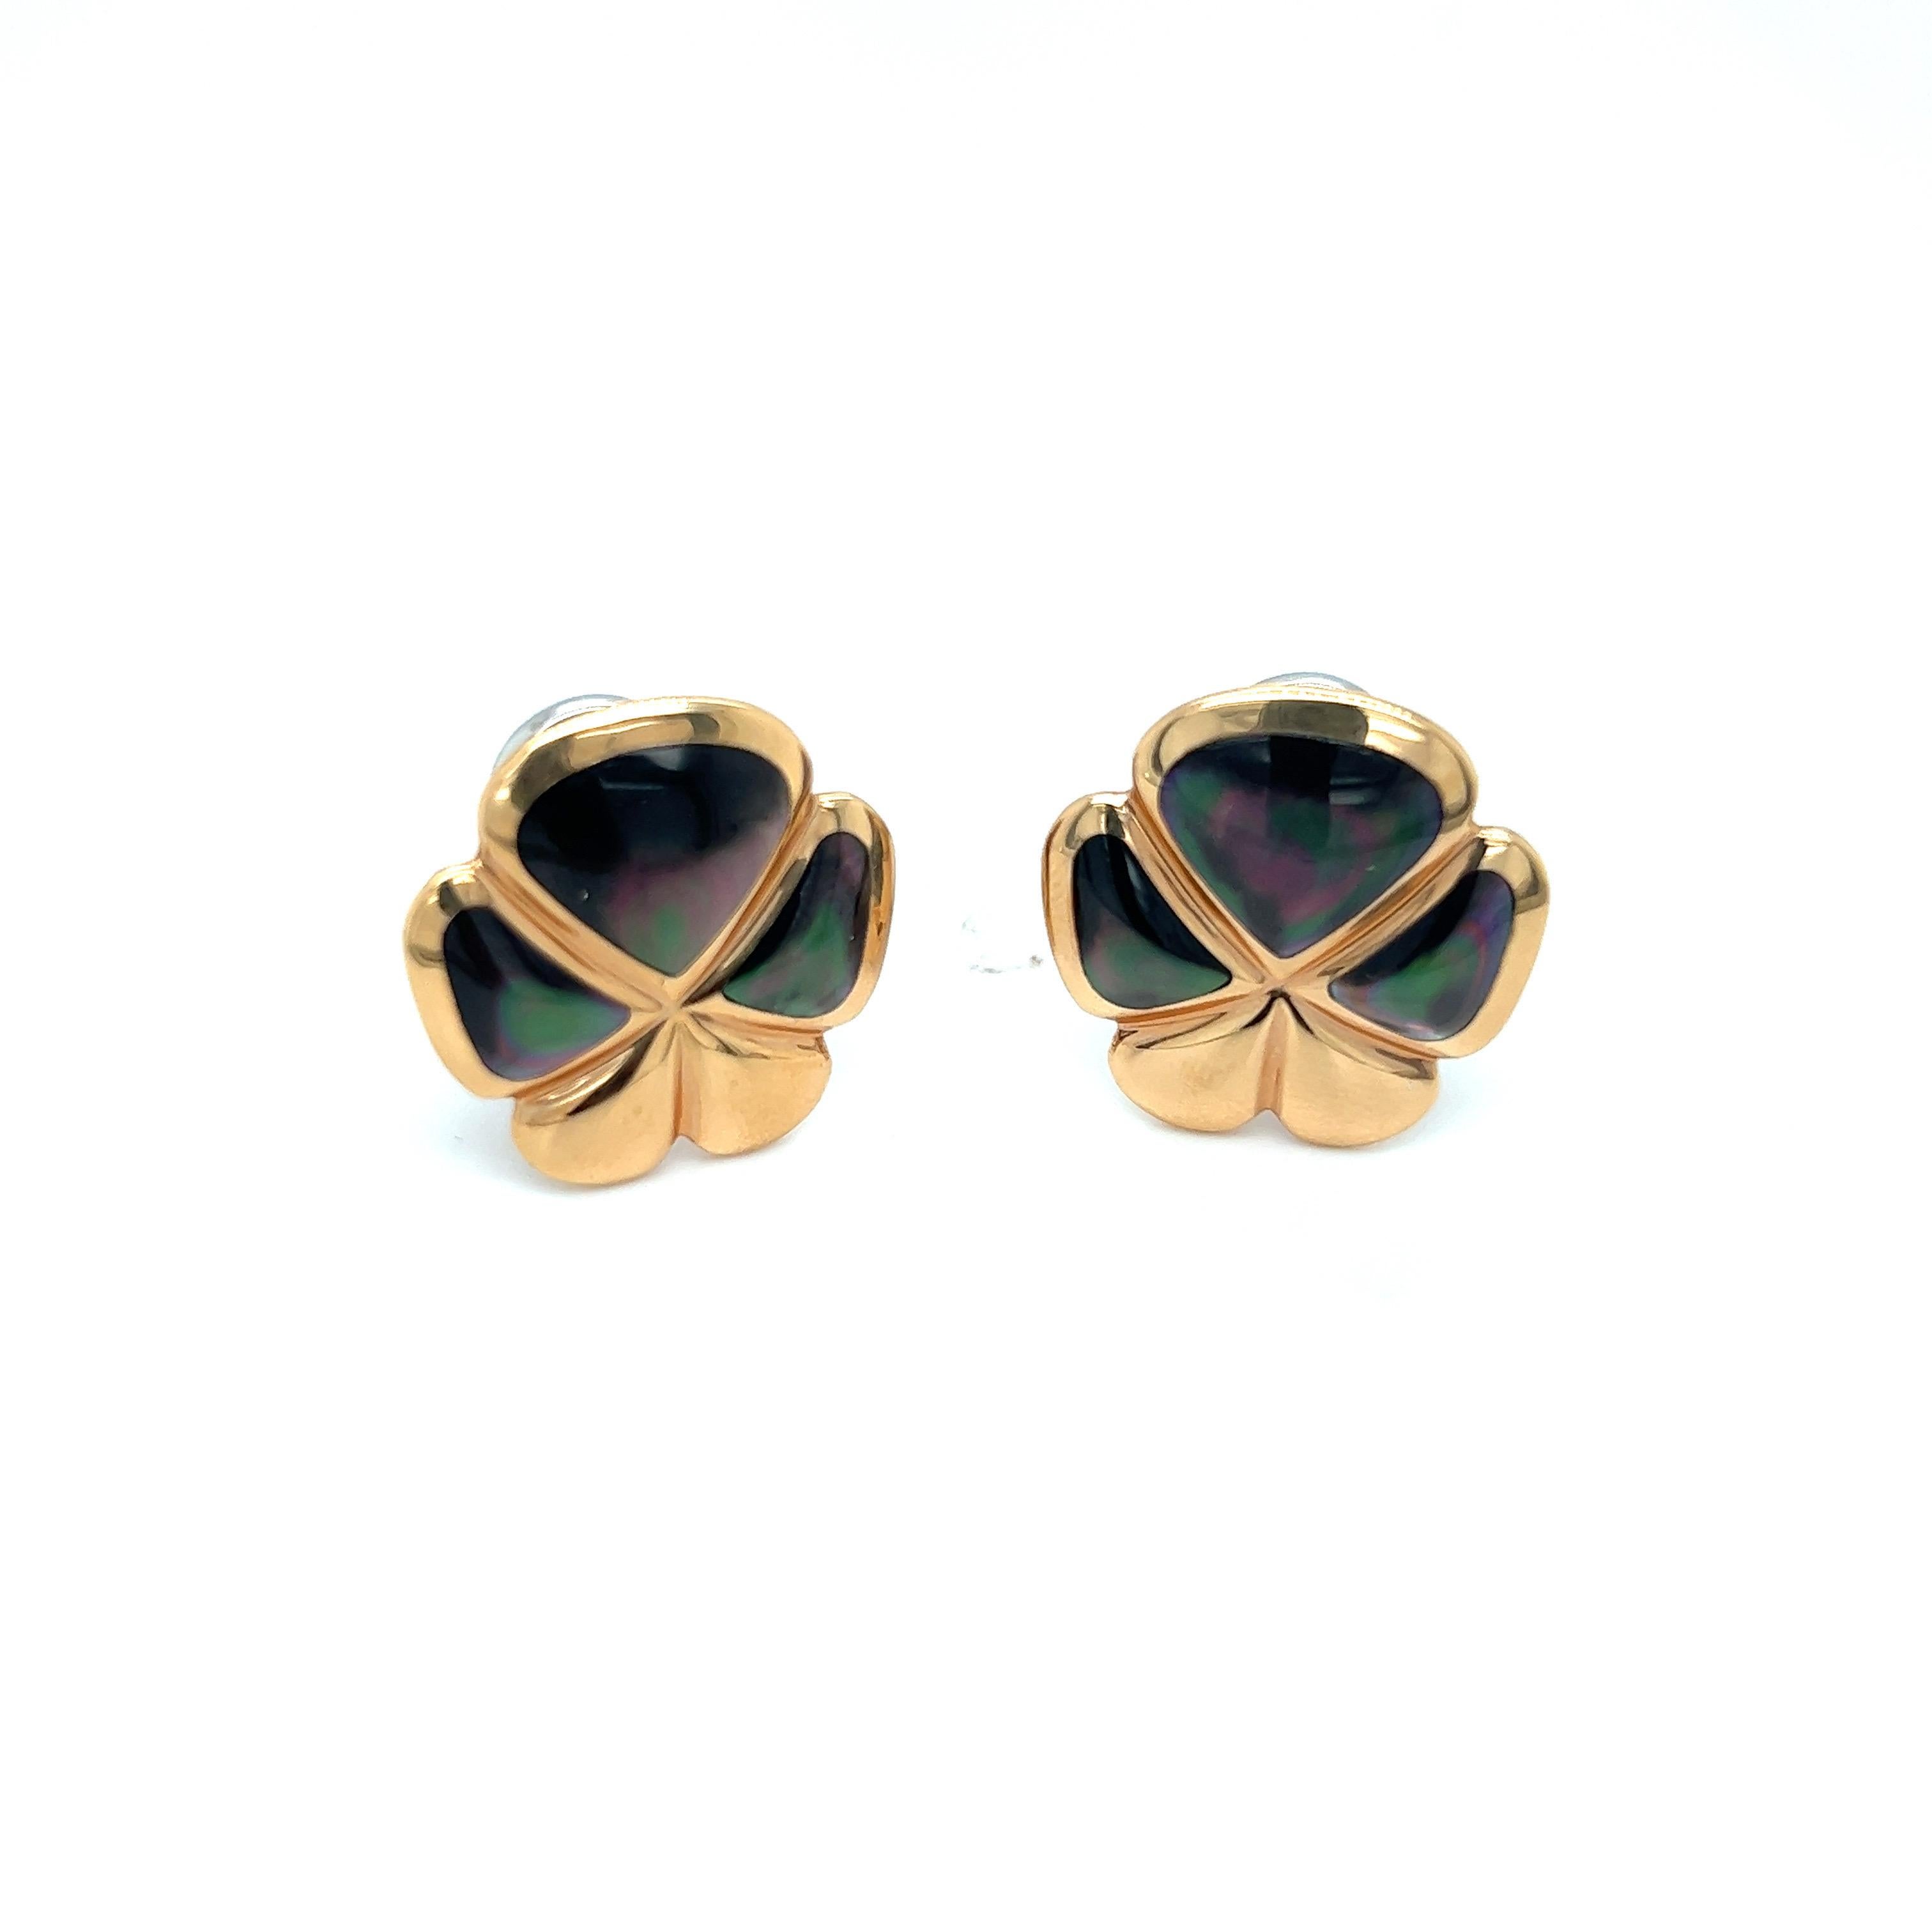 Diese von den berühmten italienischen Juwelieren De AMBROSI exklusiv für Cellini Jewelers entworfenen fünfblättrigen Glücksklee-Ohrringe sind mit schwarzem Perlmutt in 18-karätigem Roségold eingelegt.
Die Ohrringe sind durchbohrt und haben